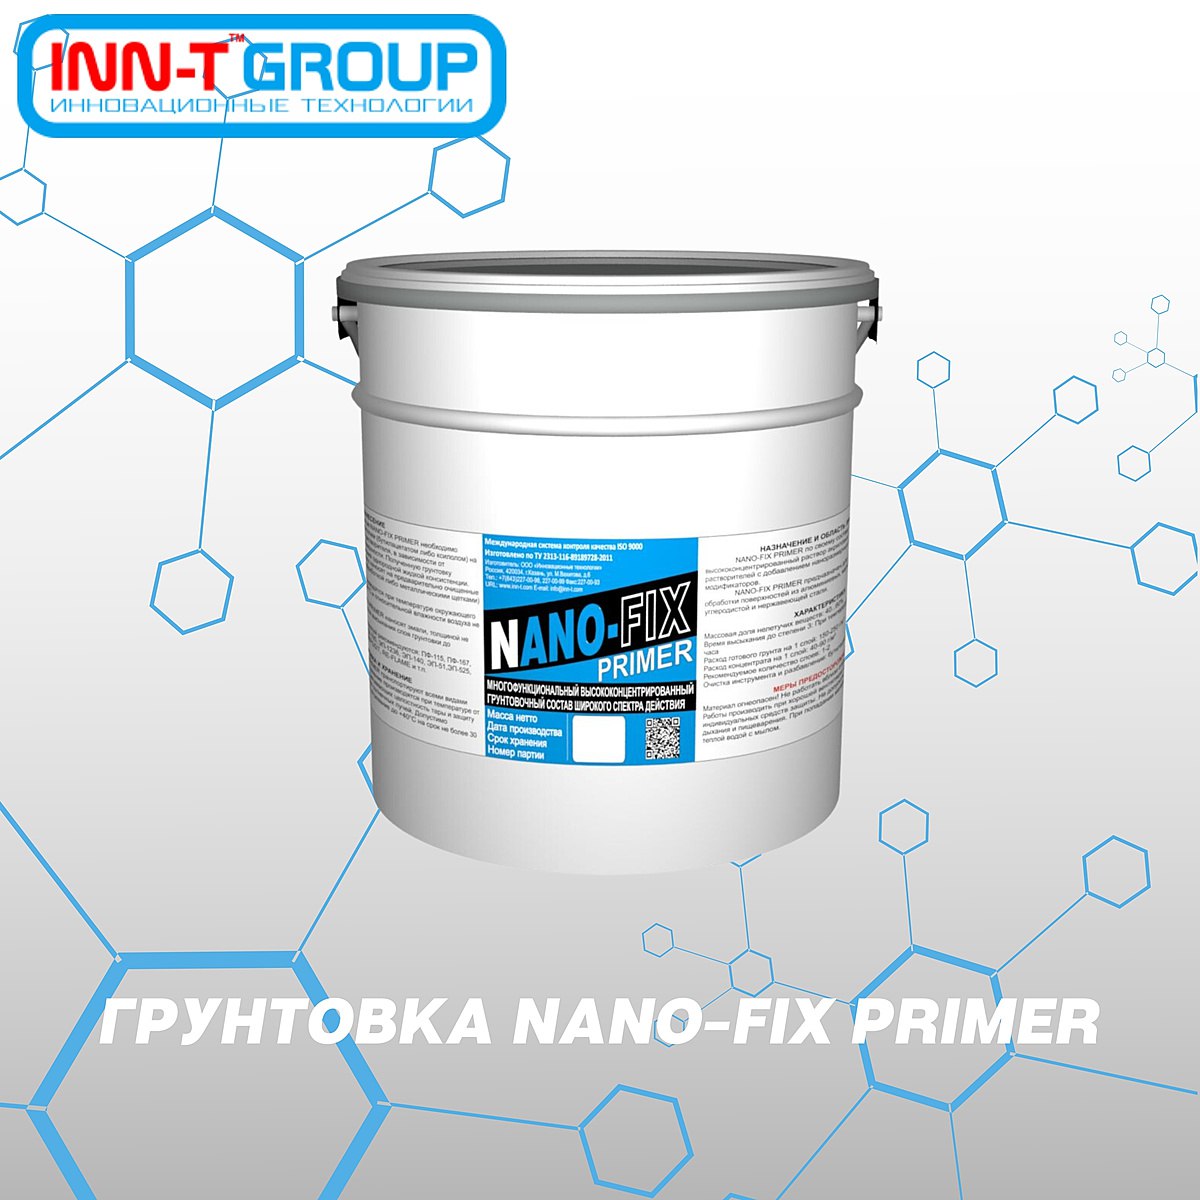 NANO-FIX PRIMER по своему составу представляет собой высококонцентрированный раствор акриловых смол и органических растворите...